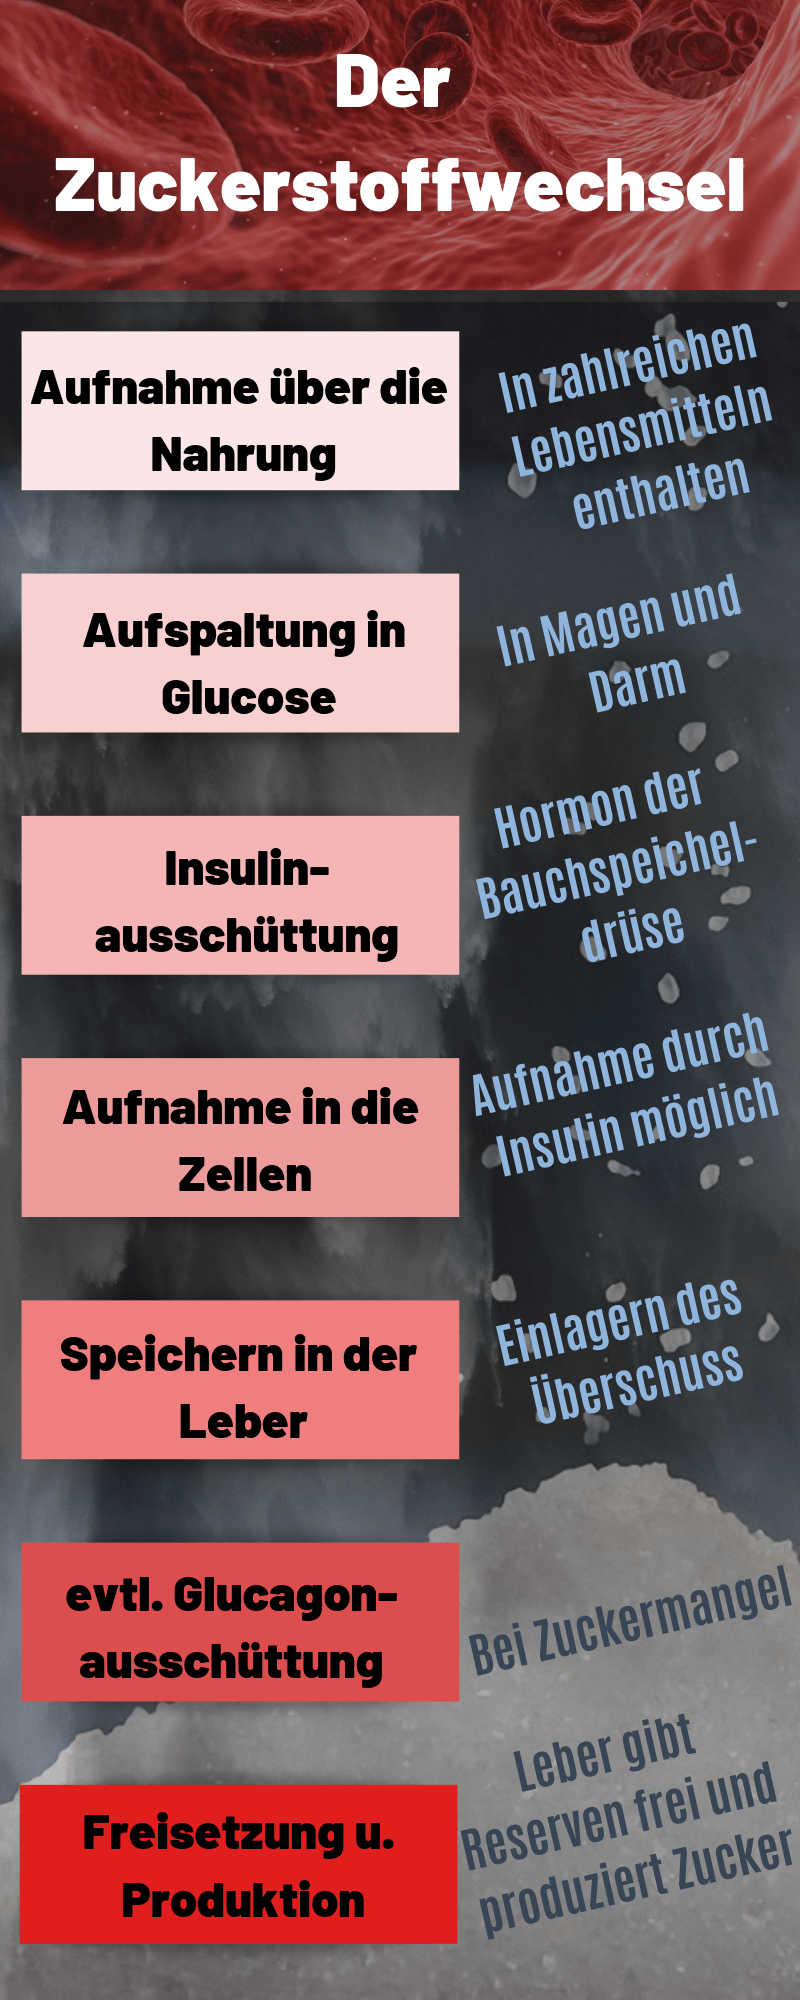 Der Zuckerstoffwechsel auf koerperfett-analyse.de